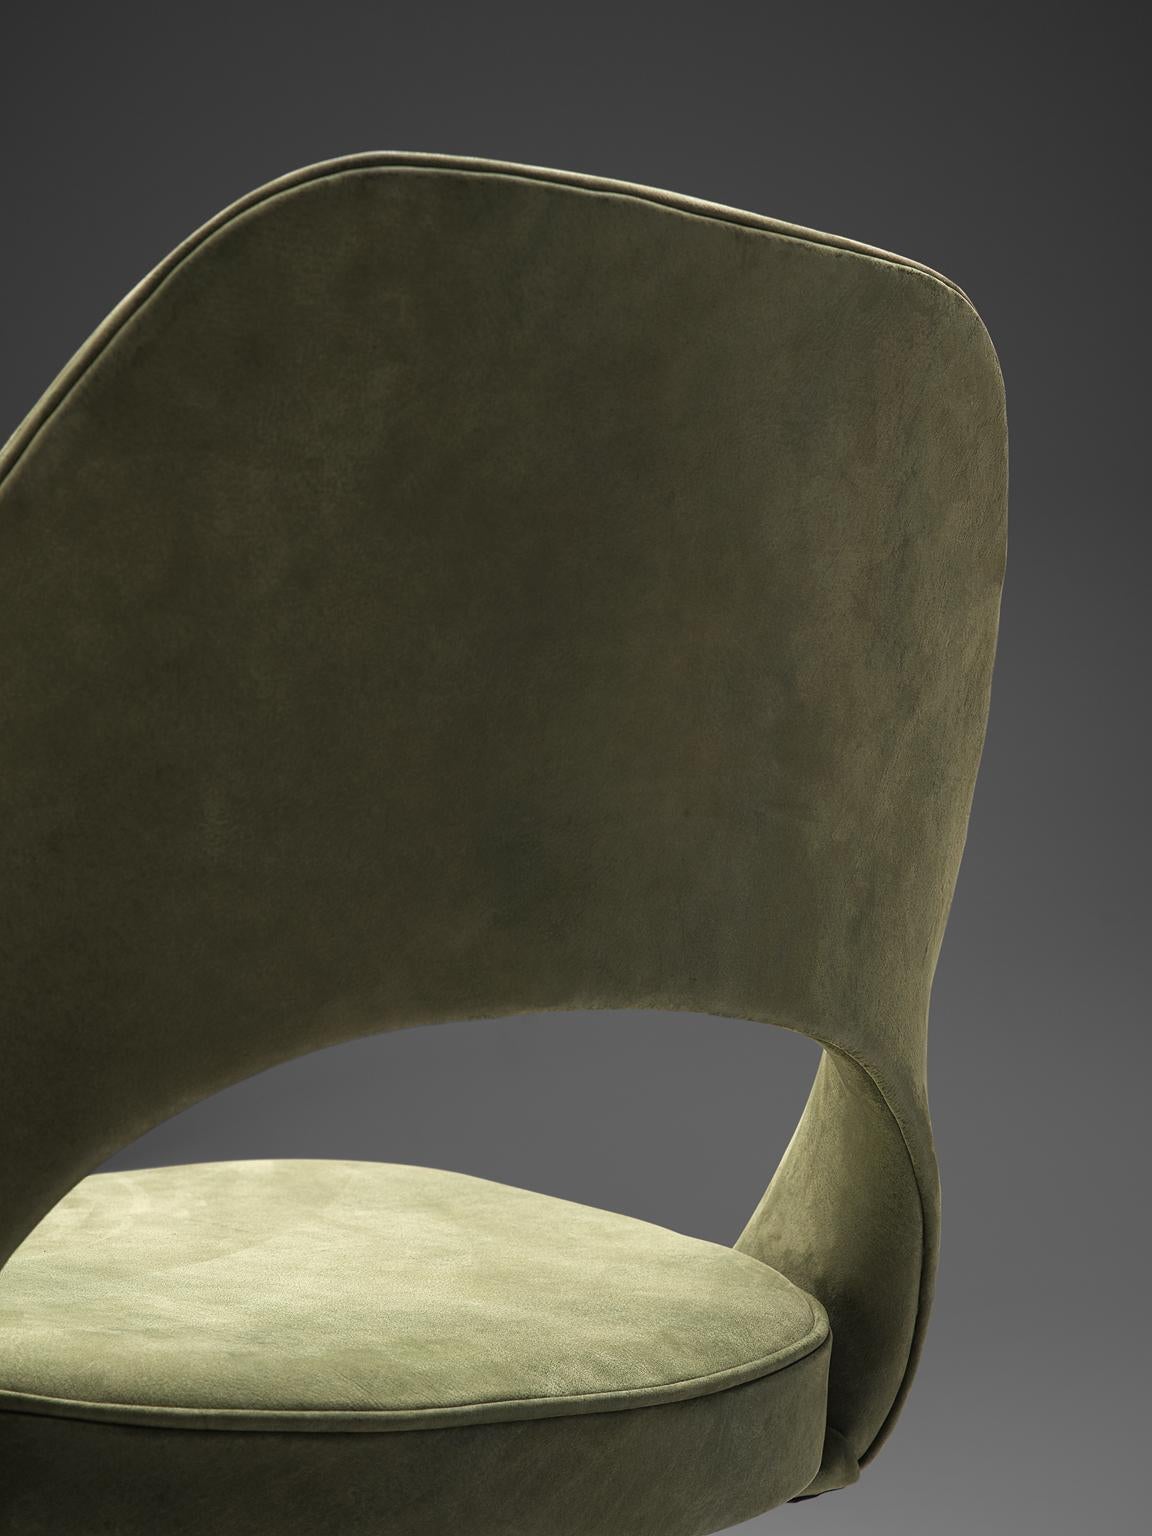 American Eero Saarinen Set of Six Chairs in Moss Green Suede